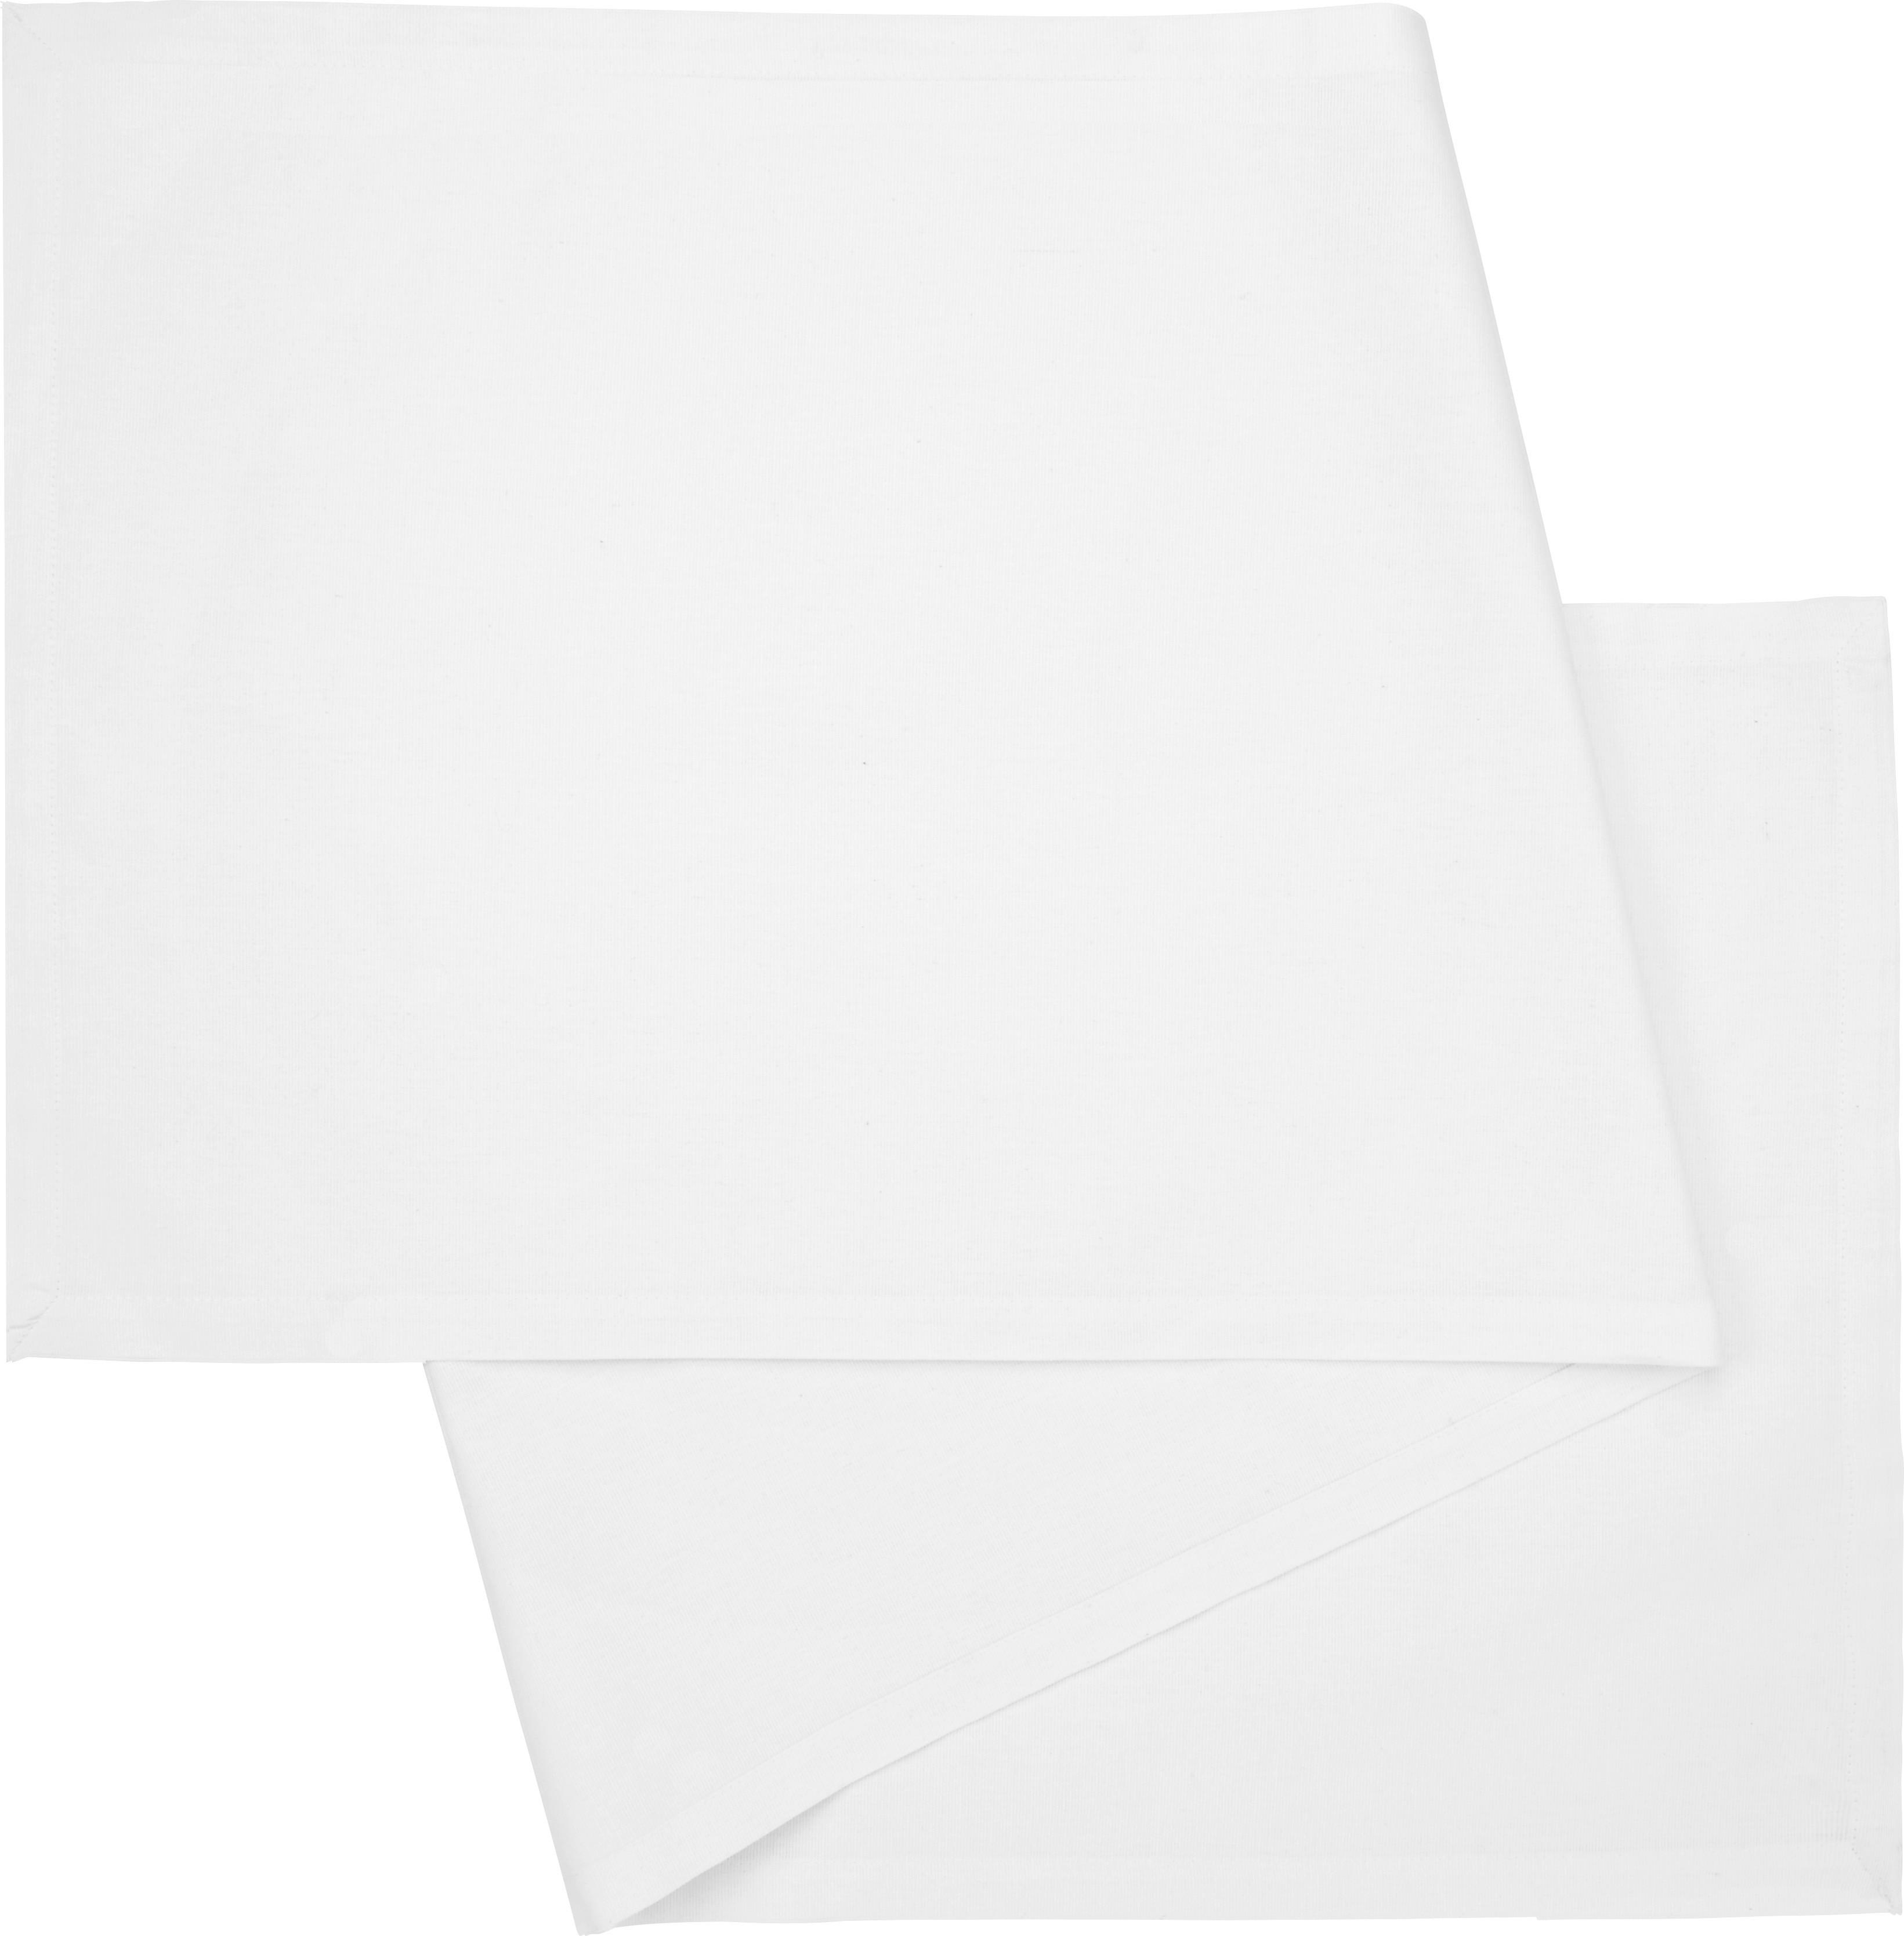 Tischläufer Steffi in Weiß - Naturfarben, Textil (45/150cm) - Modern Living